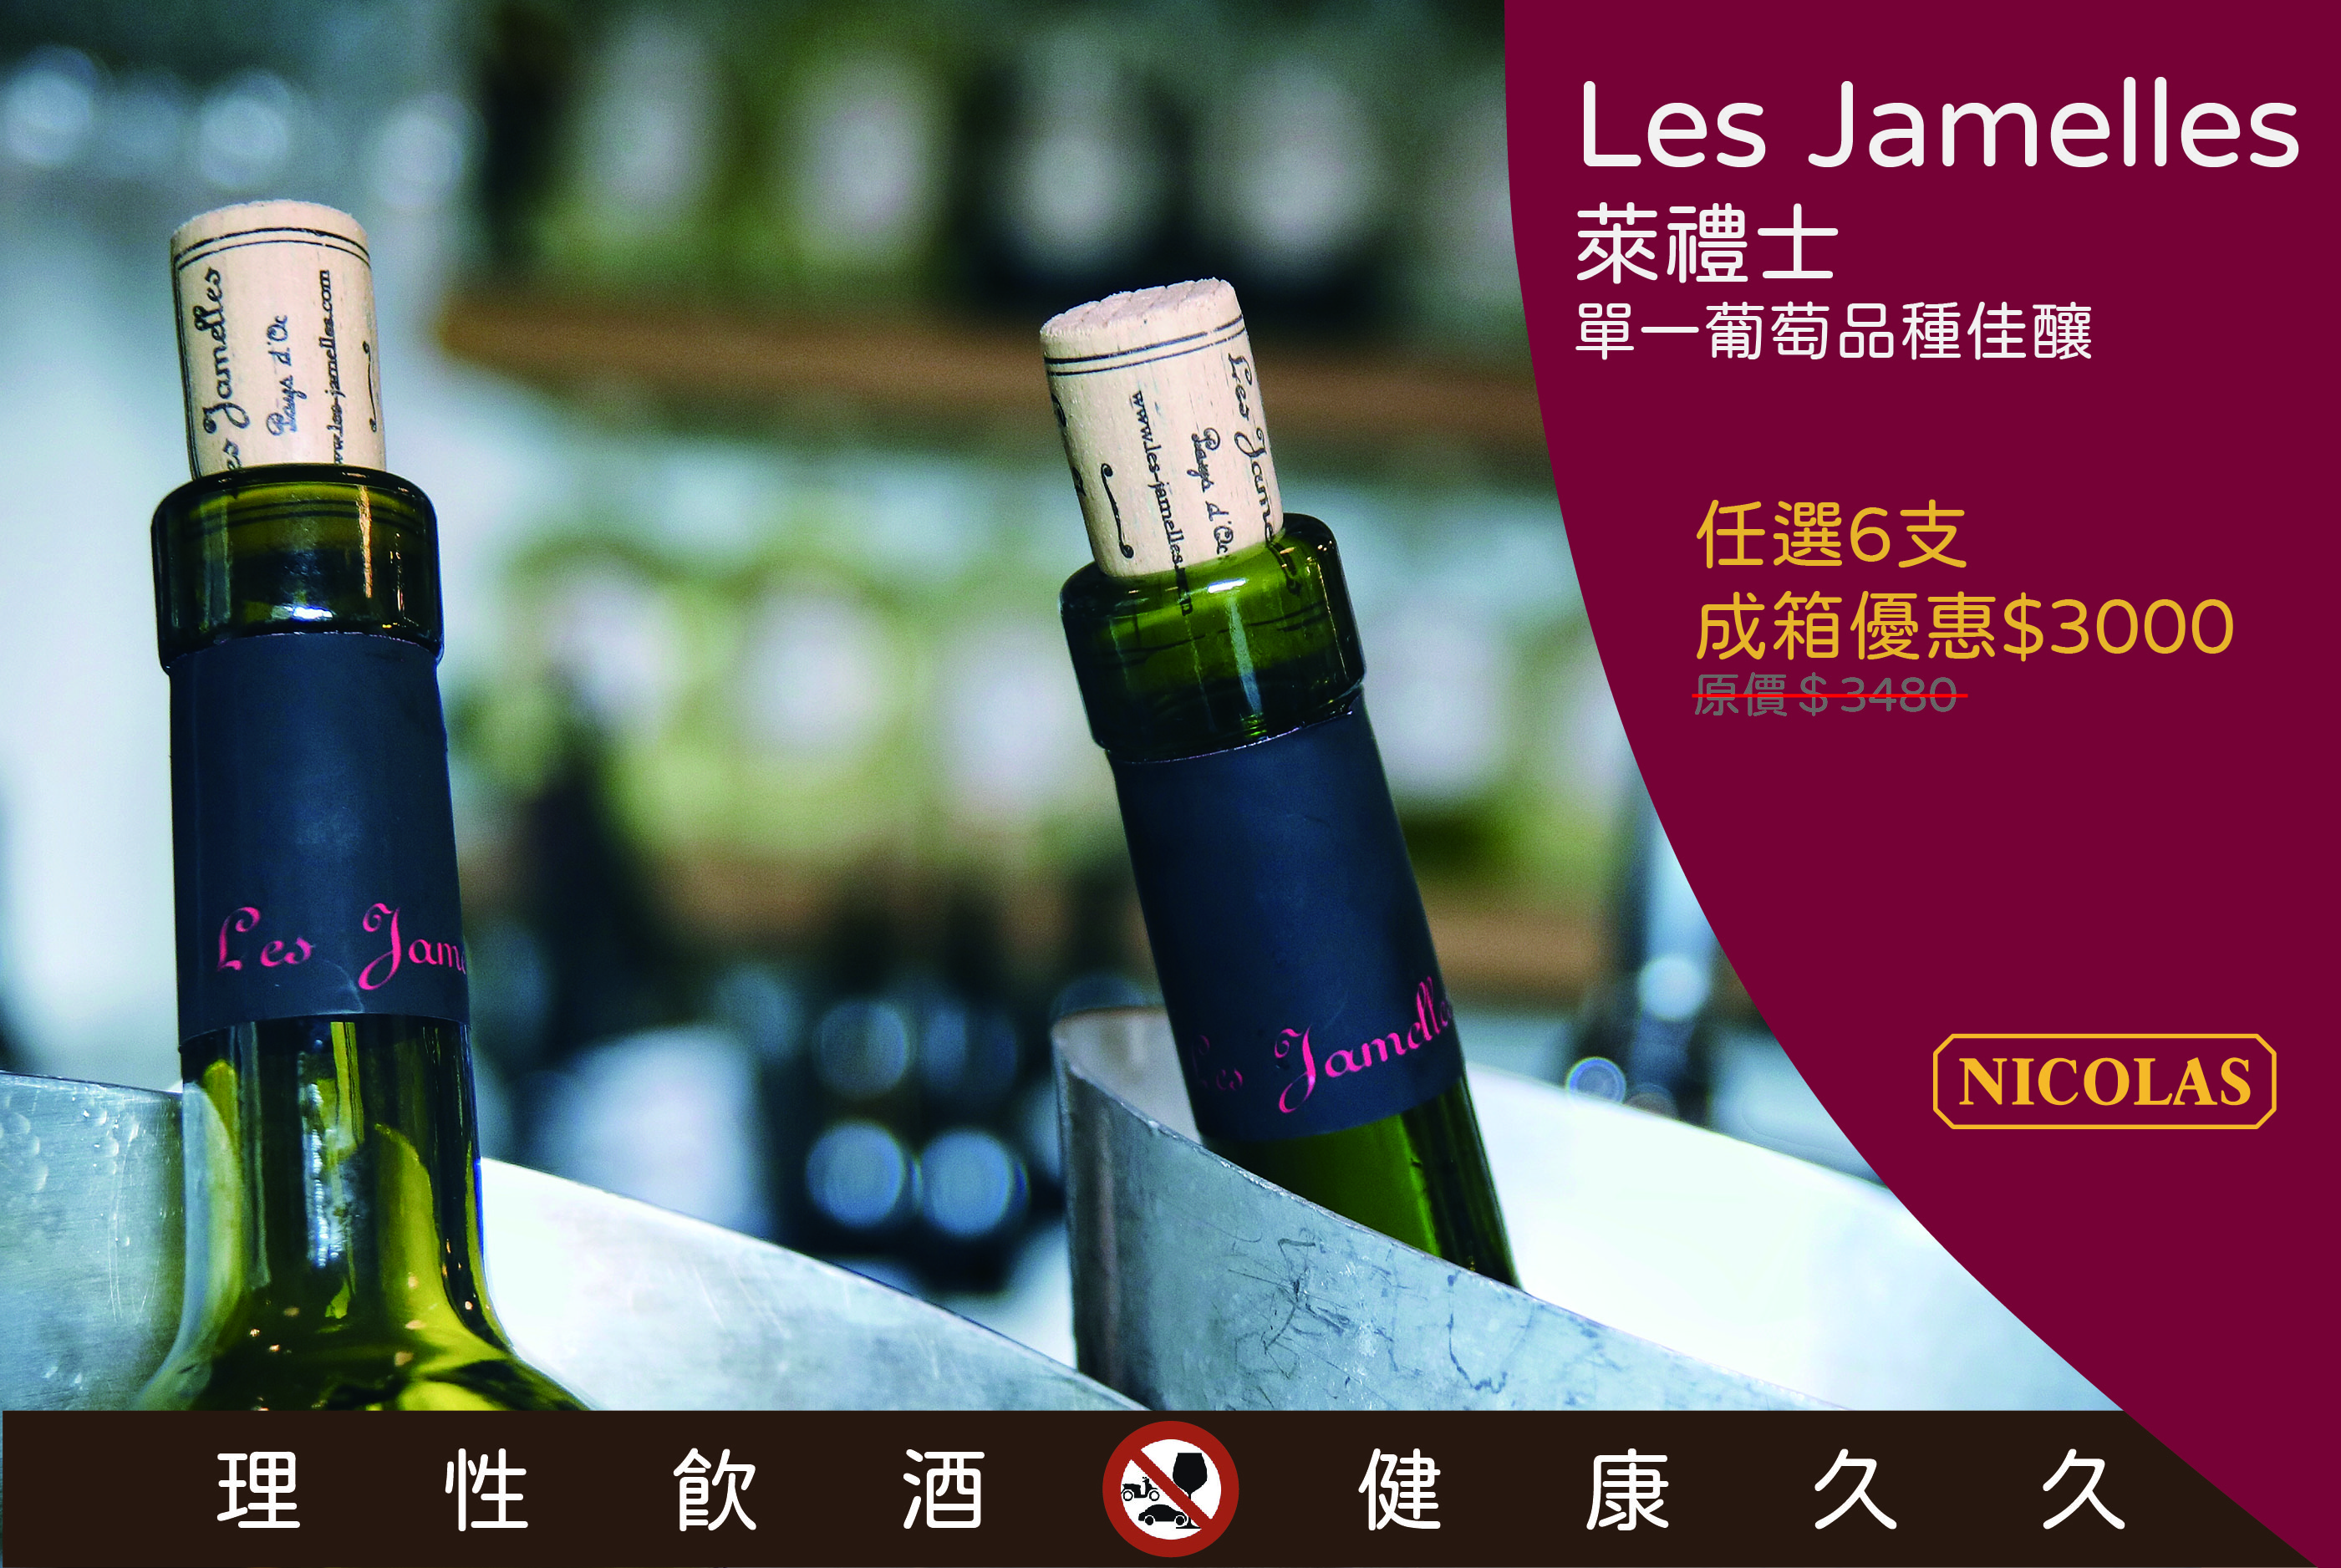 Nicolas Taiwan - Les Jamelles 6 bottles promotion